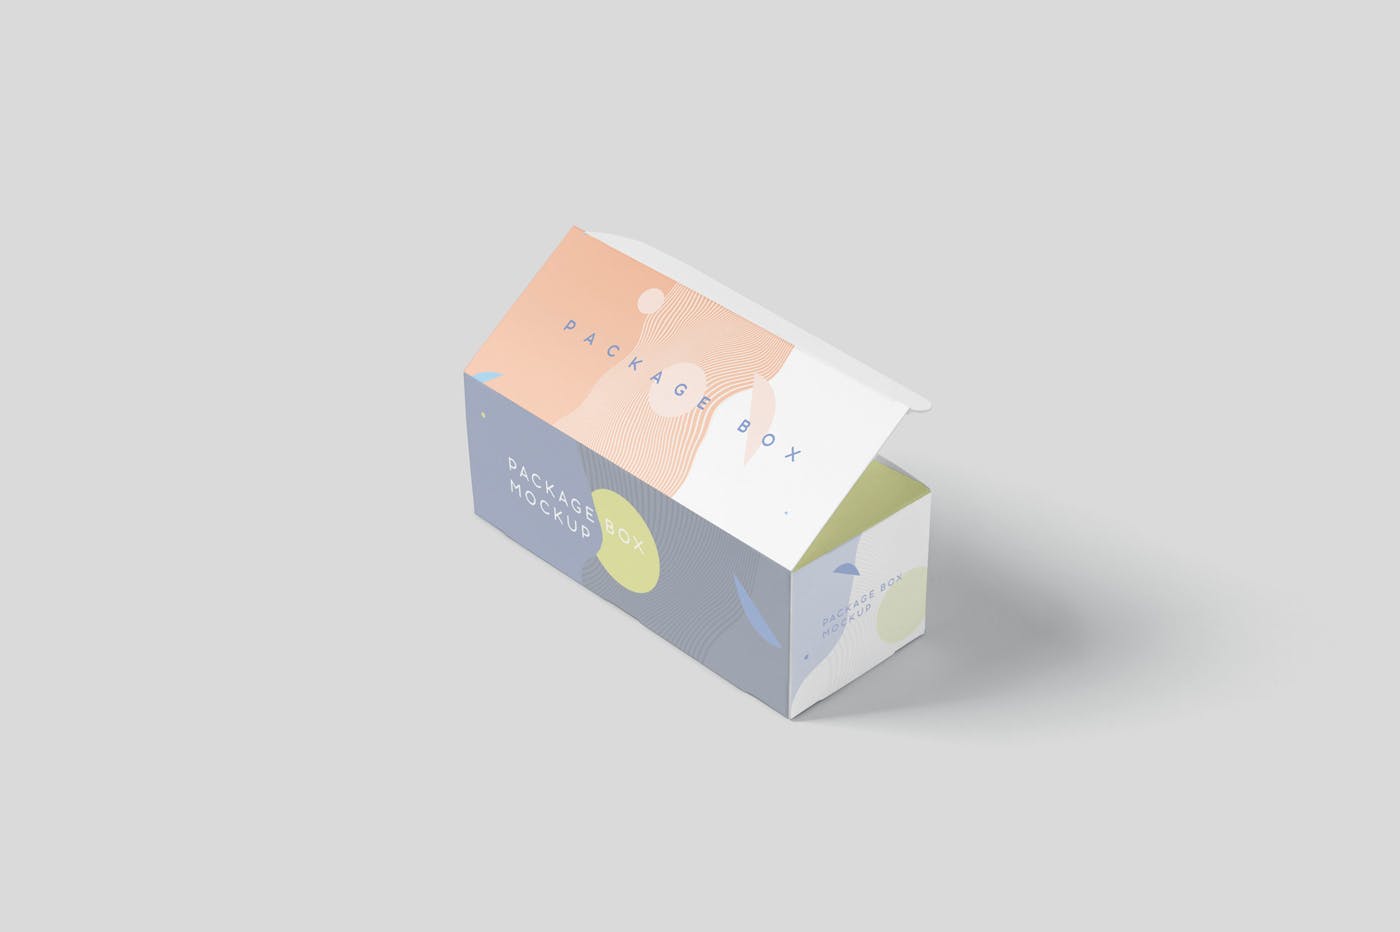 宽矩形包装盒外观设计效果图第一素材精选 Package Box Mock-Up Set – Wide Rectangle插图(5)